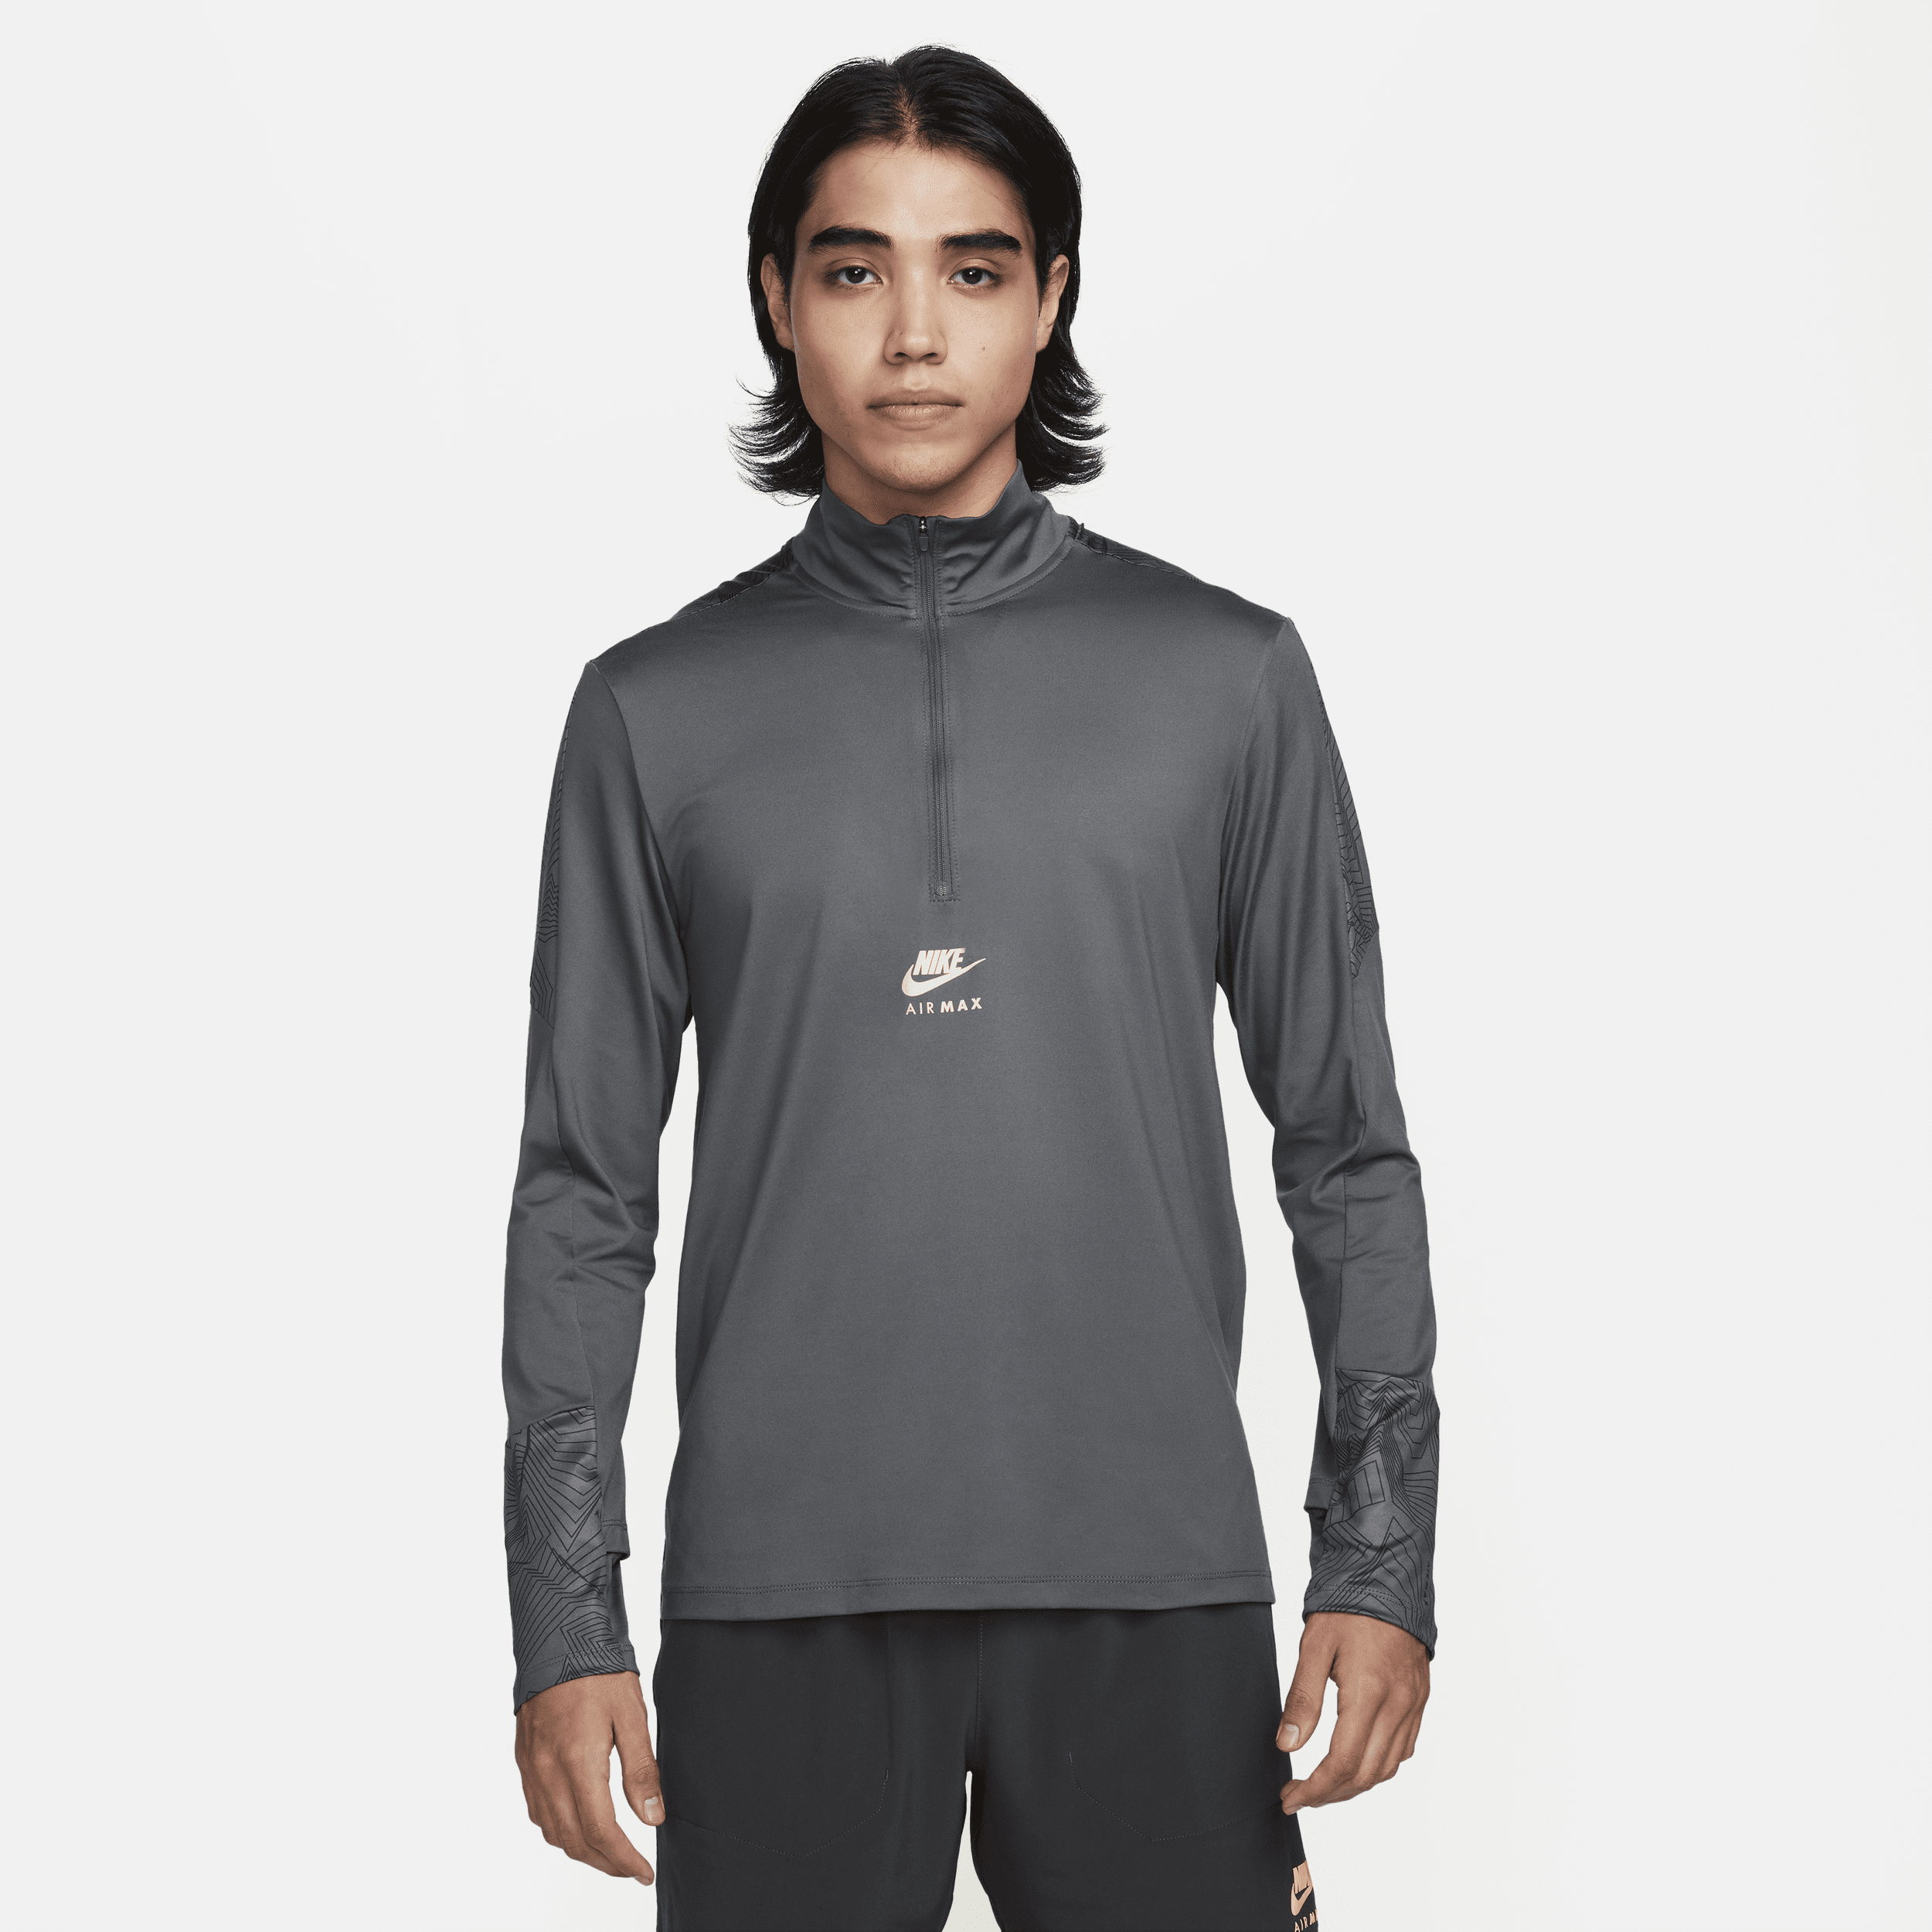 Maglia Dri-FIT con zip a 1/4 Nike Air Max – Uomo - Grigio